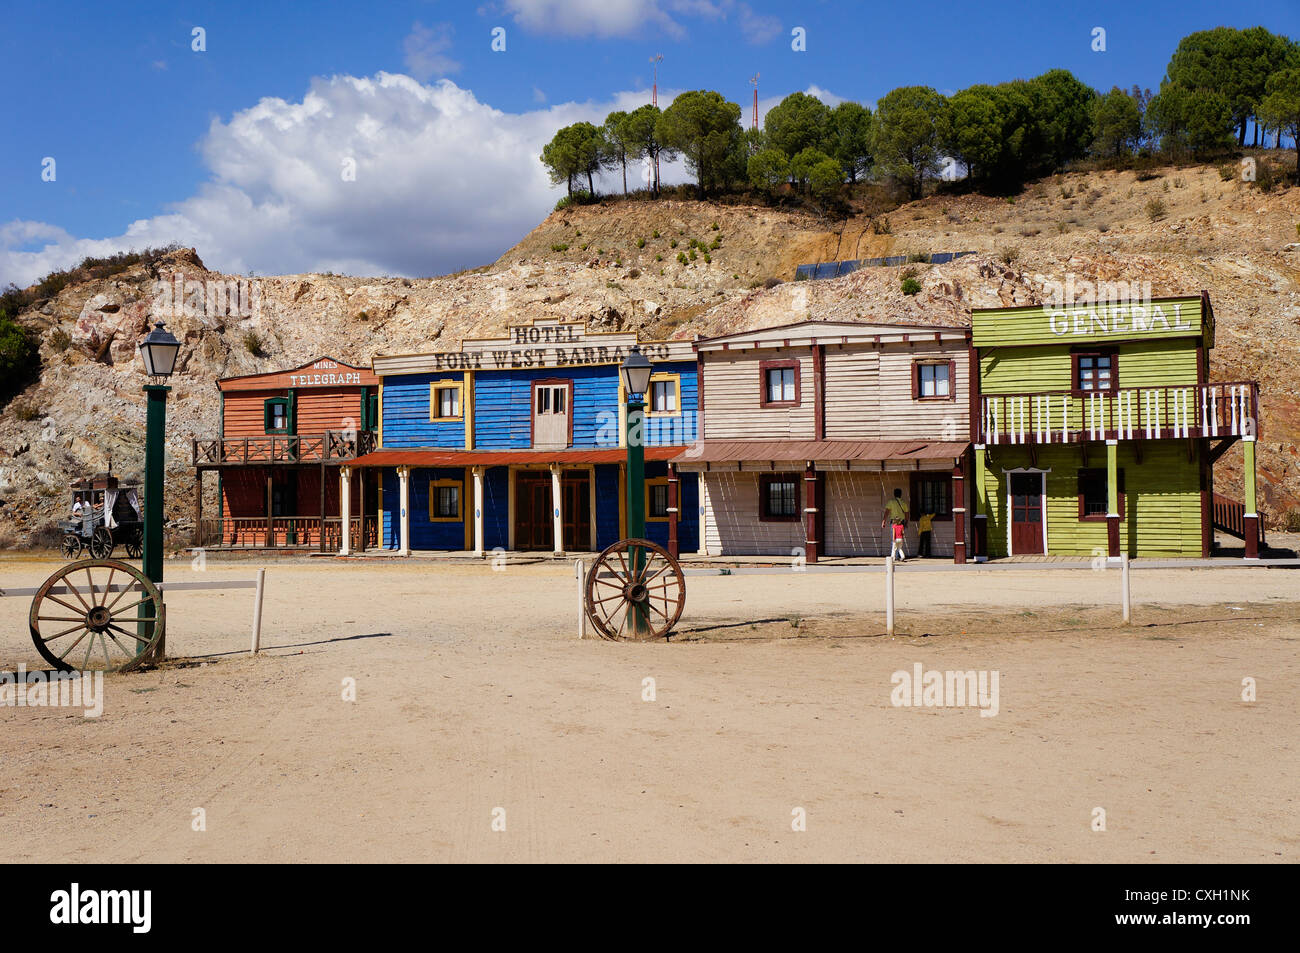 Western Town, una vista frontale di un vecchio hotel fort west Barranco, Siviglia, Spagna Foto Stock